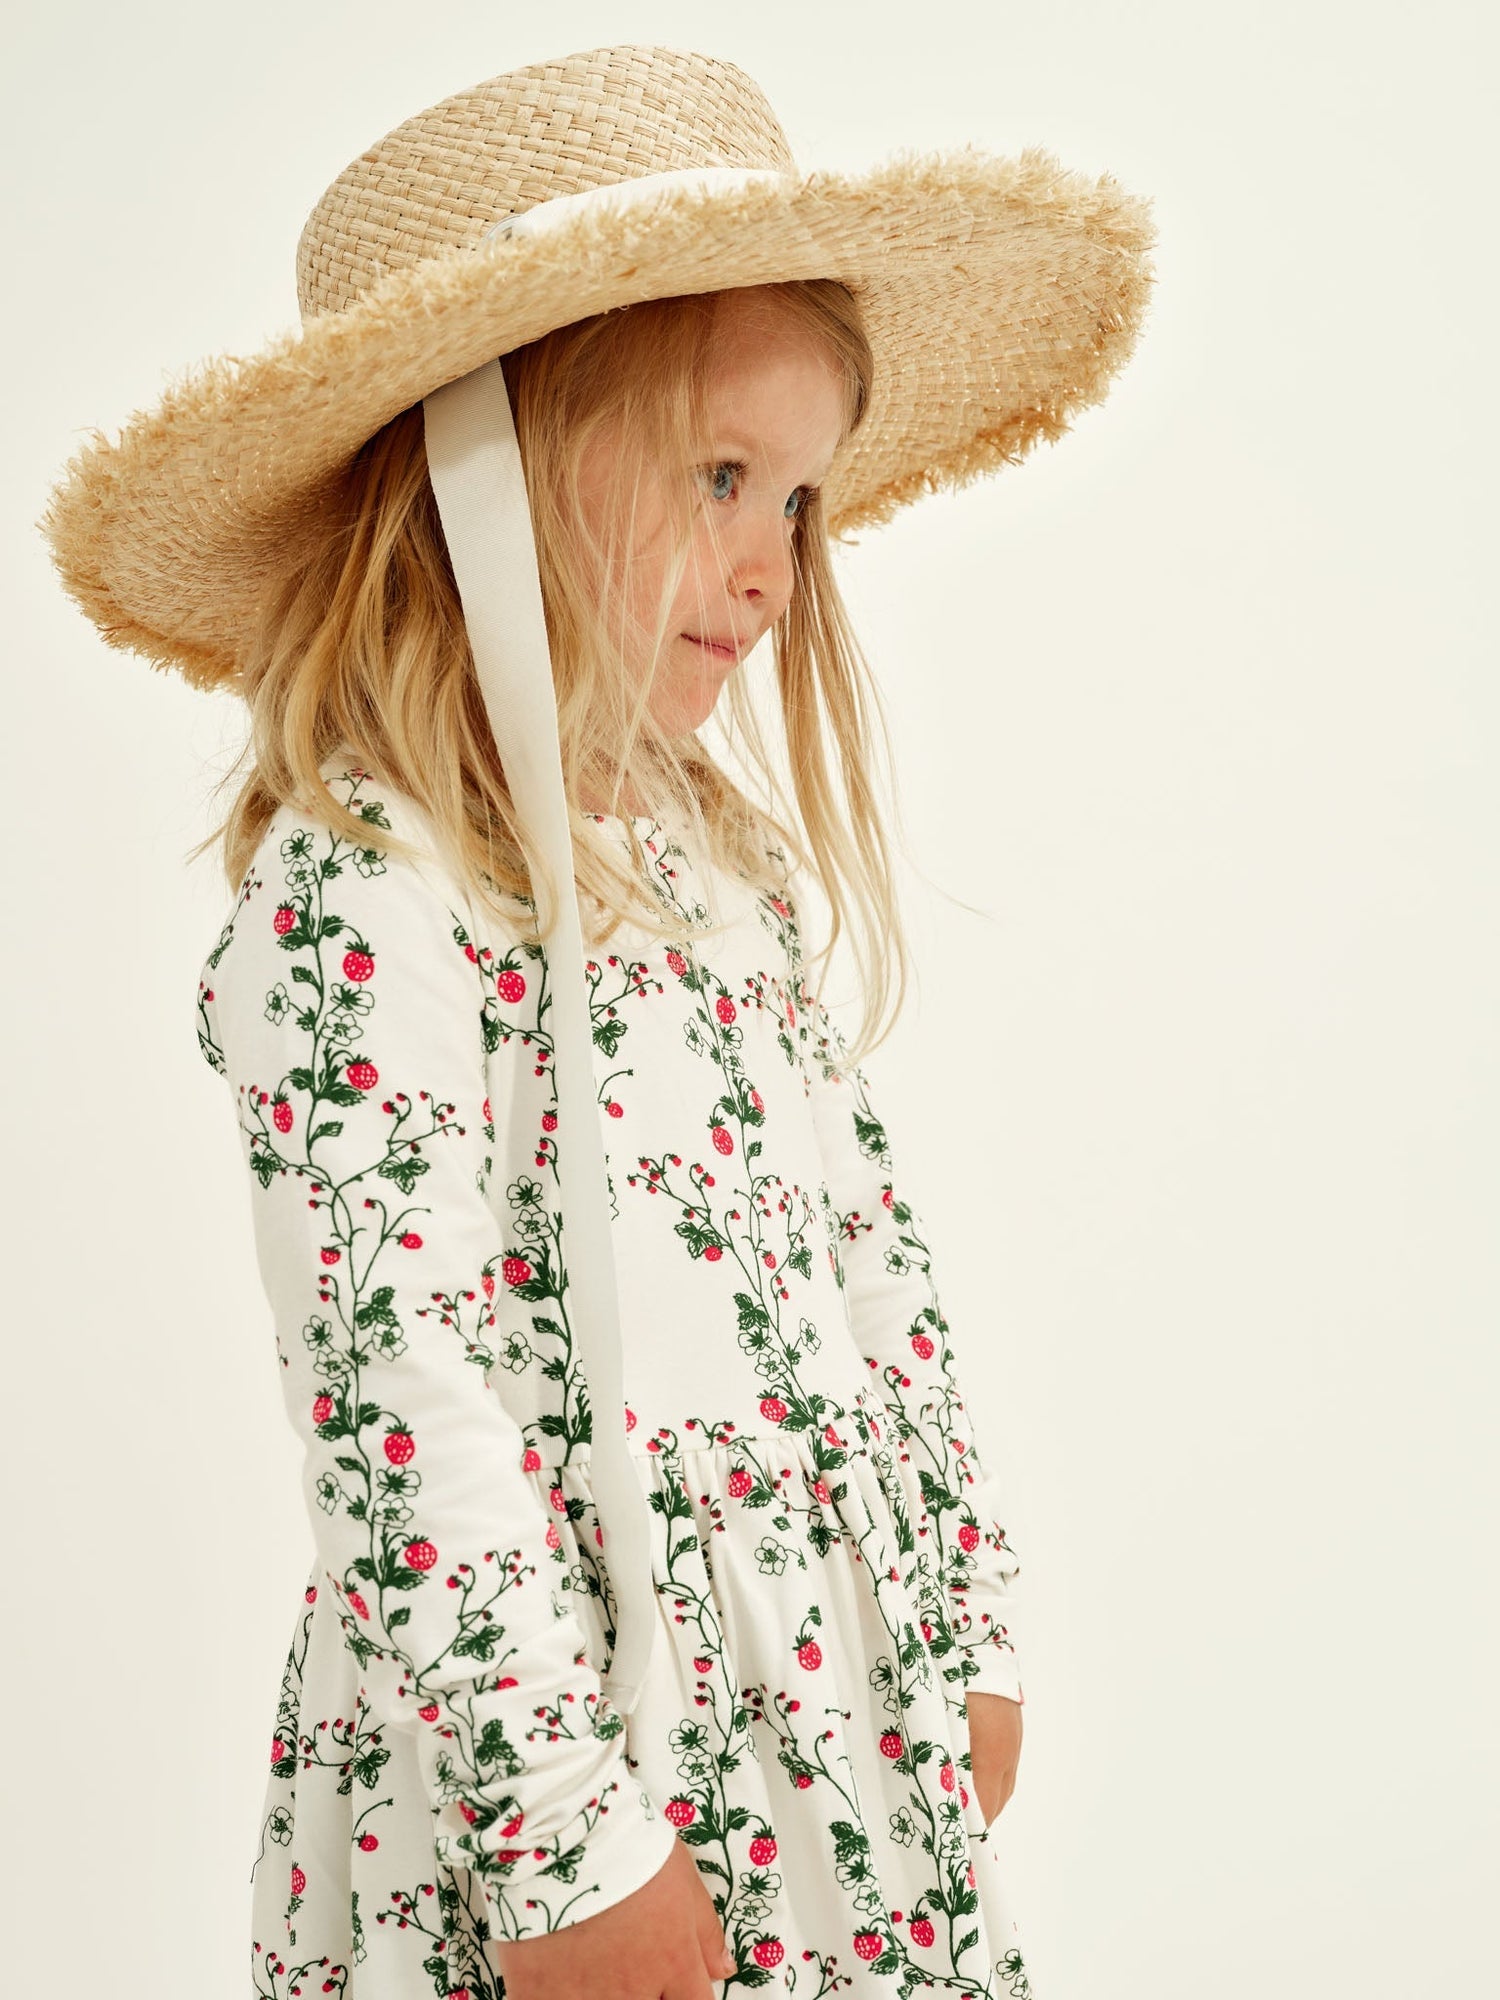 Kids' Wild Strawberry Dress